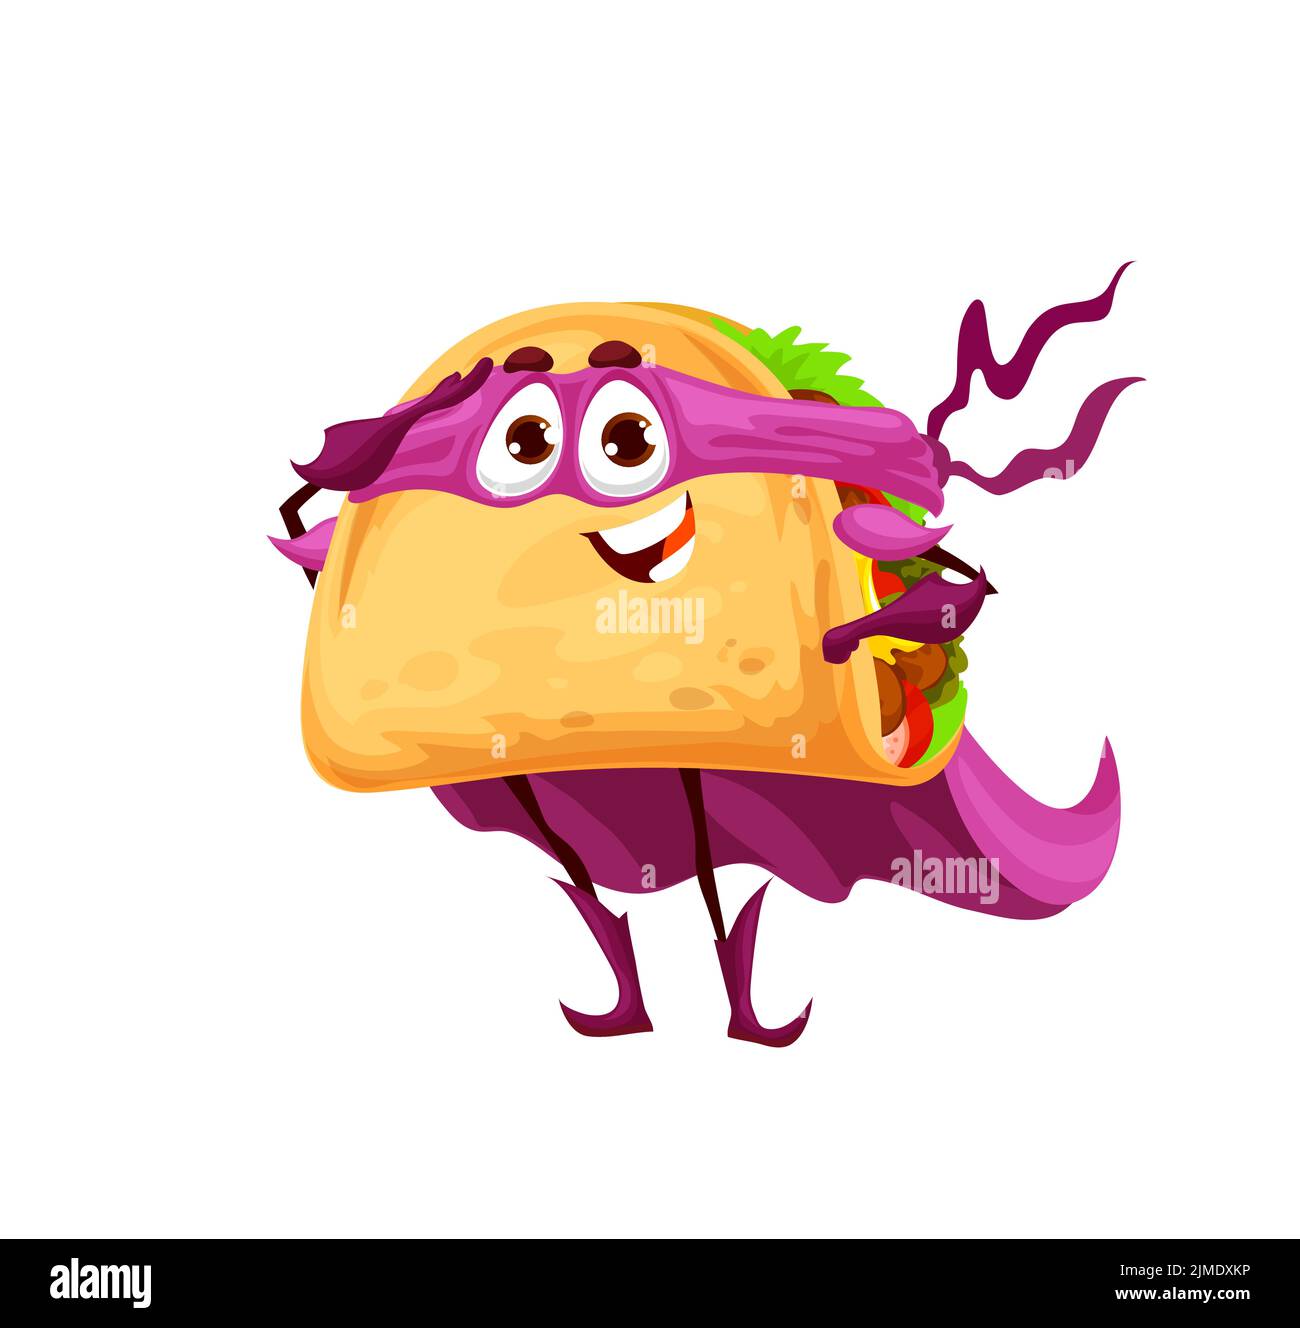 Tacos character Imágenes recortadas de stock - Página 2 - Alamy